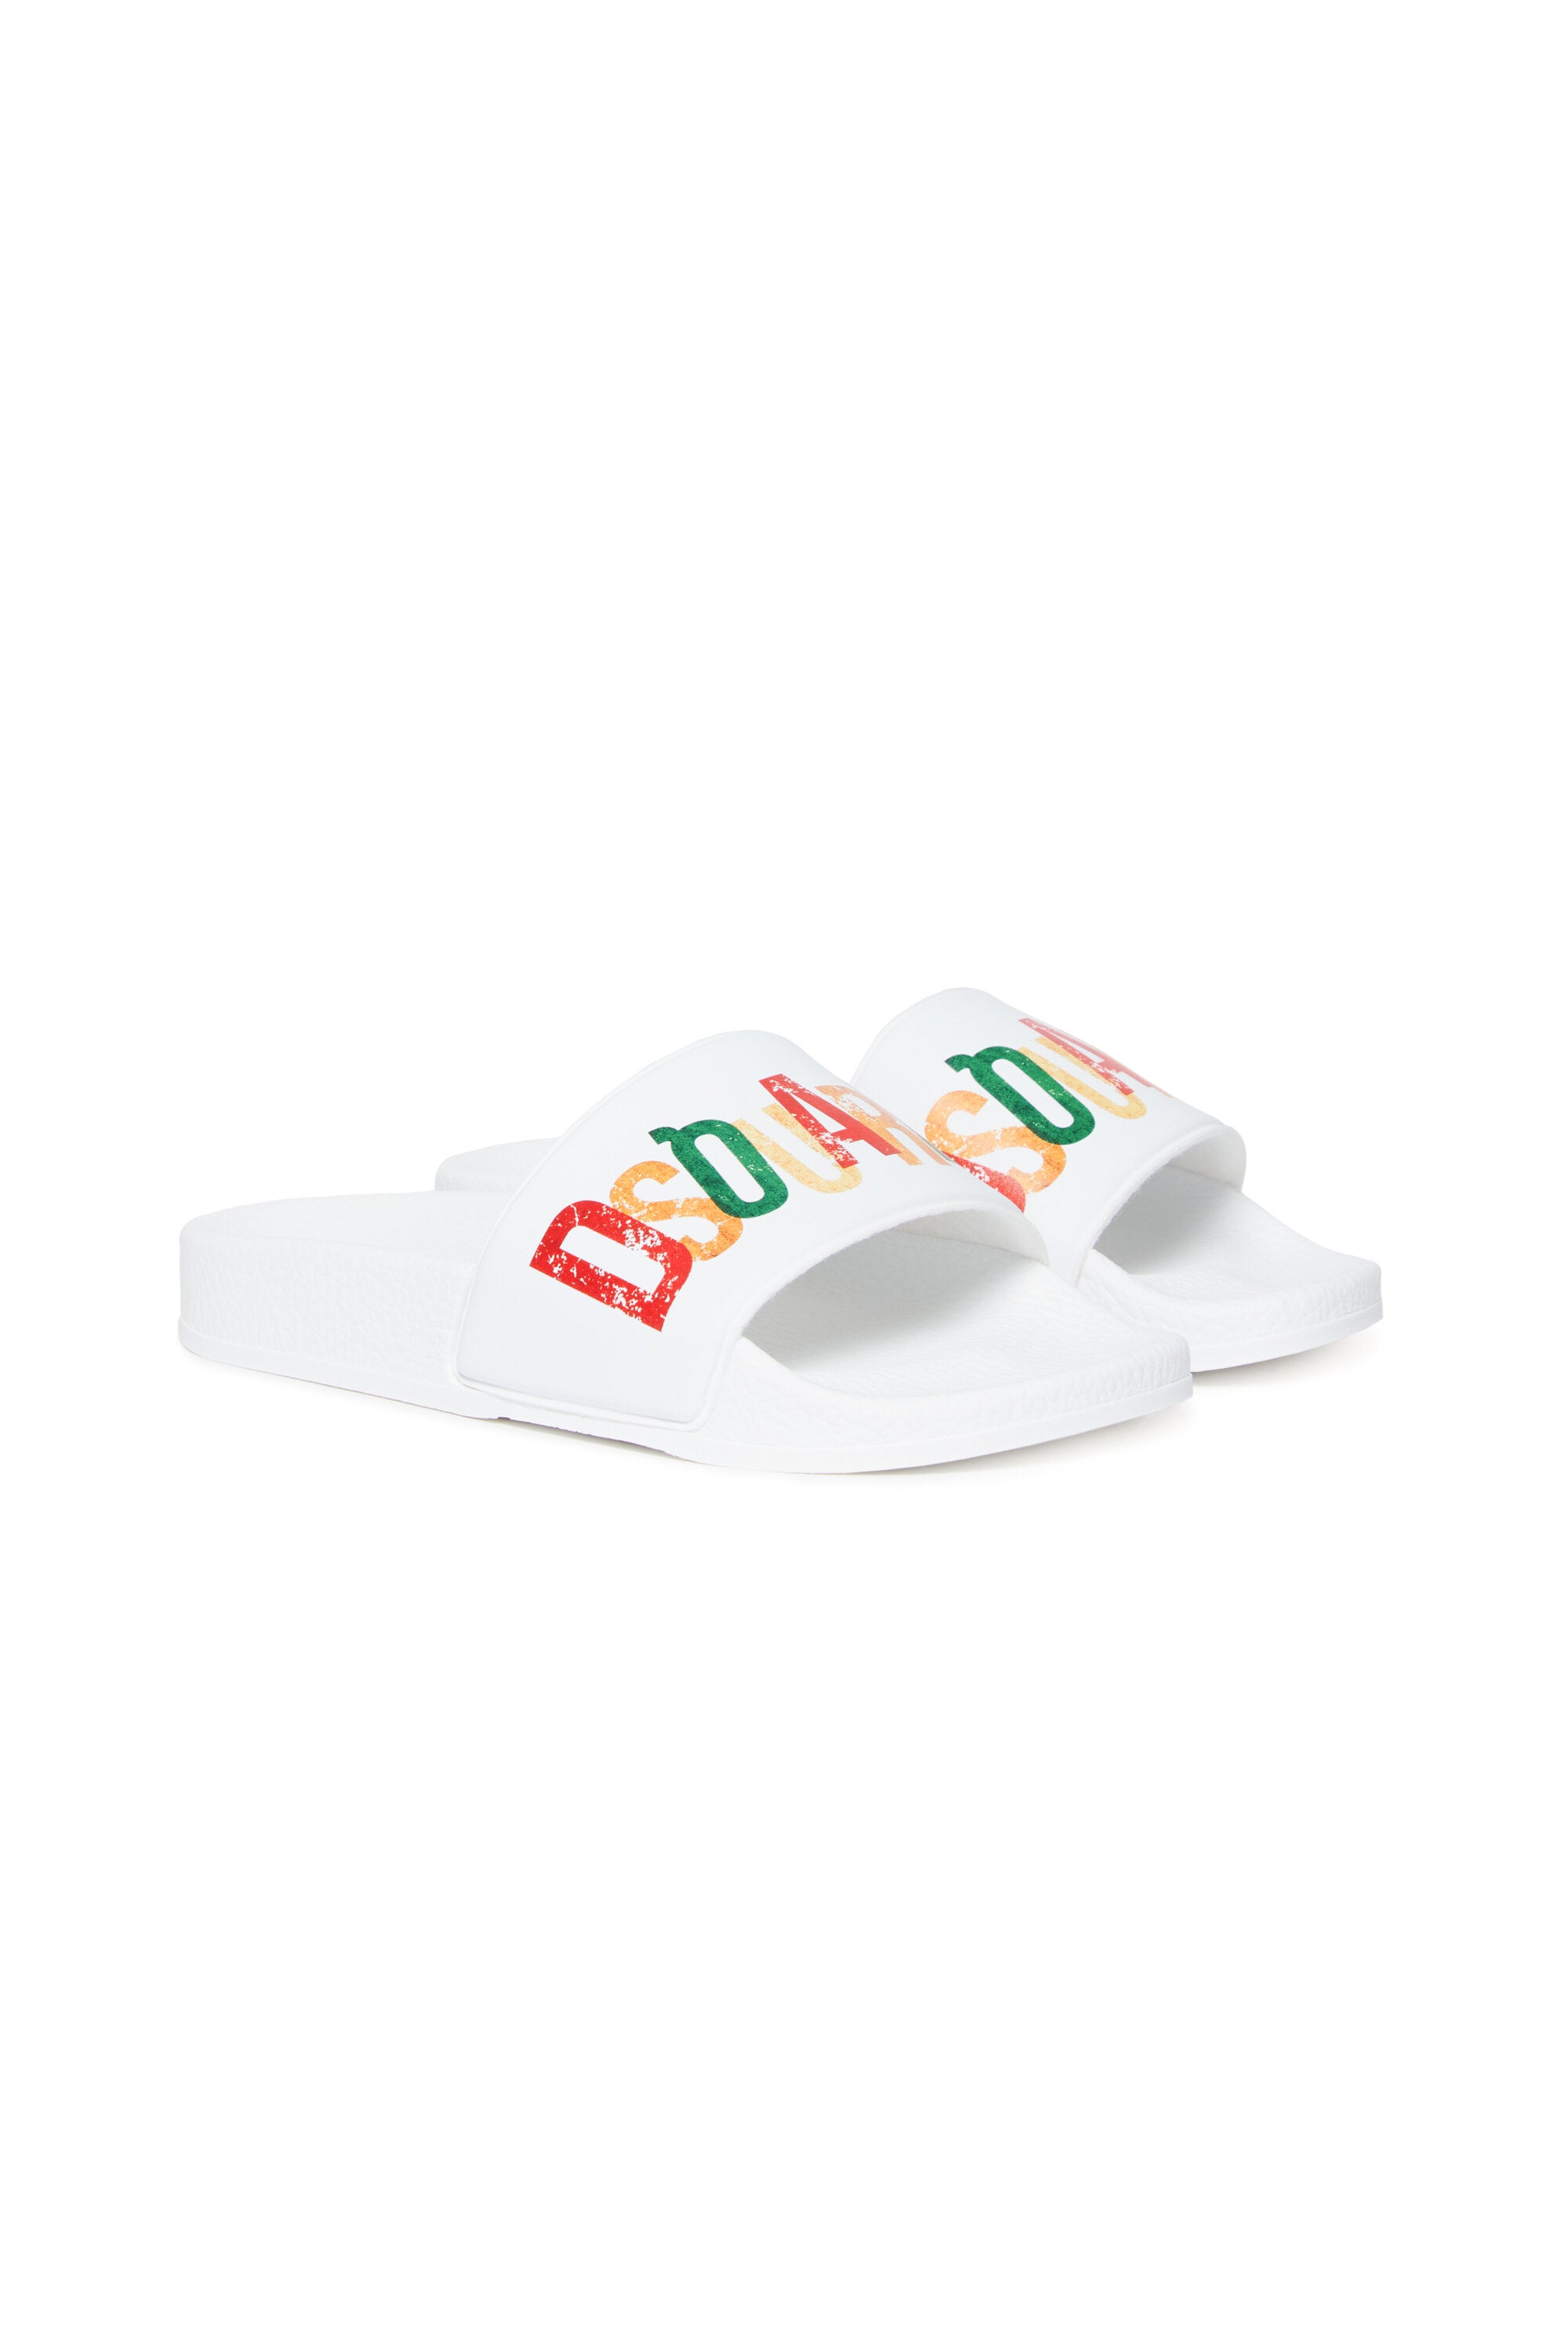 Multicolor branded slide slippers